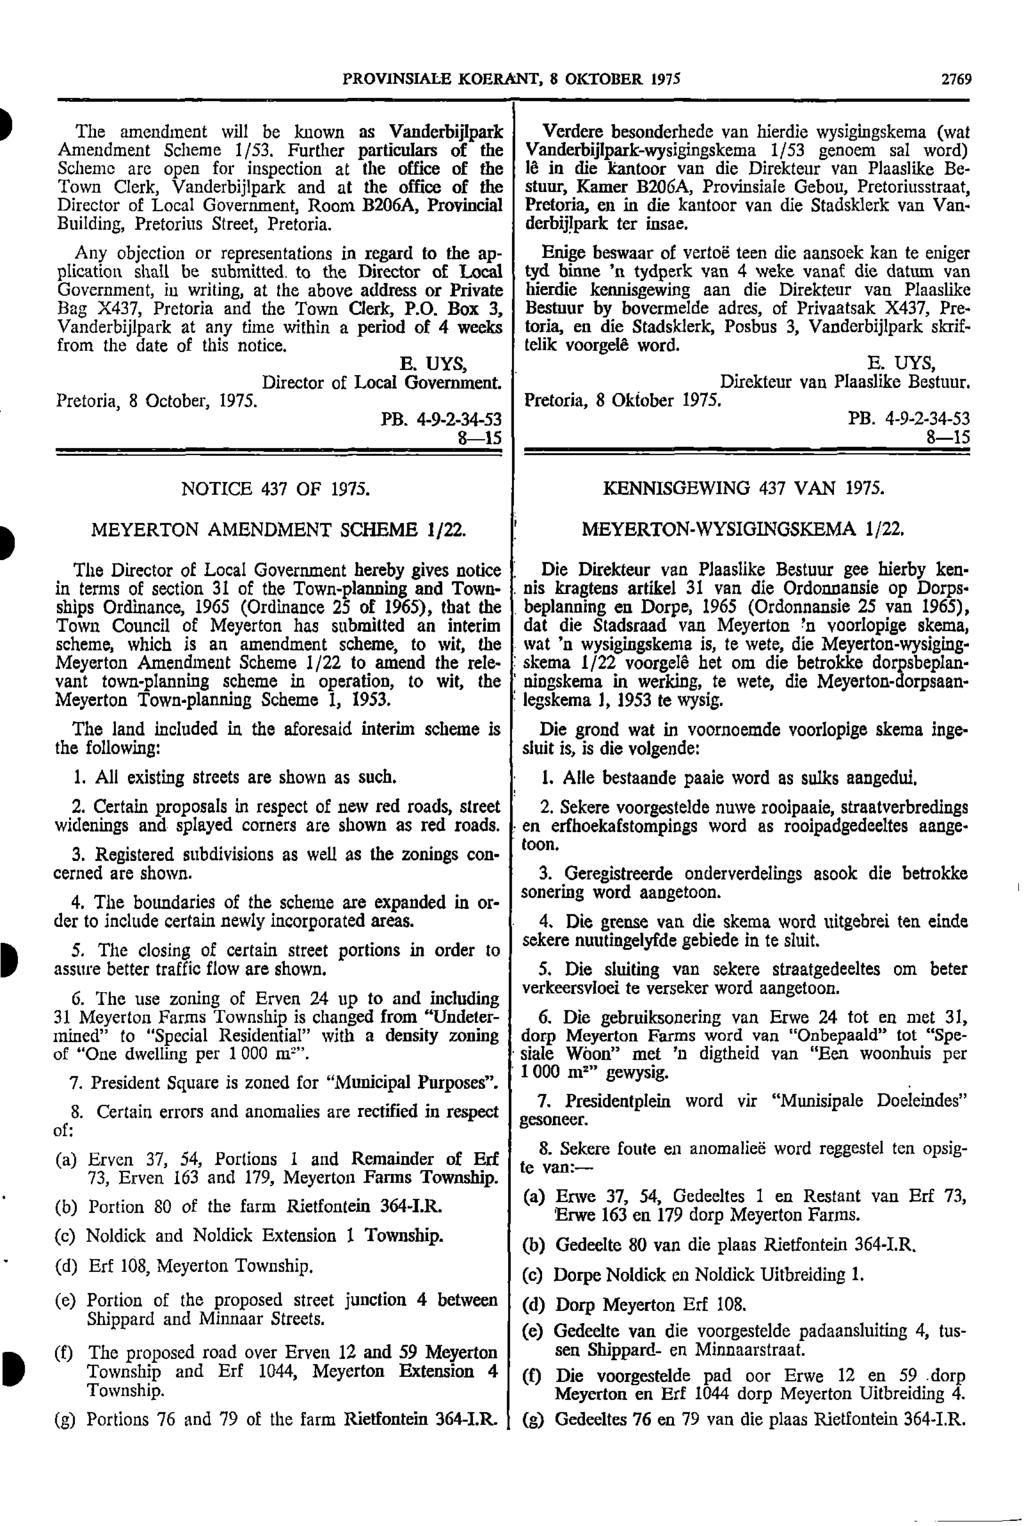 PROVNSALE KOERANT 8 OKTOBER 1975 2769 The amendment will be known as Vanderbijlpark Verdere besonderhede van hierdie wysigingskema (wat Amendment Scheme 1/53 Further particulars of the